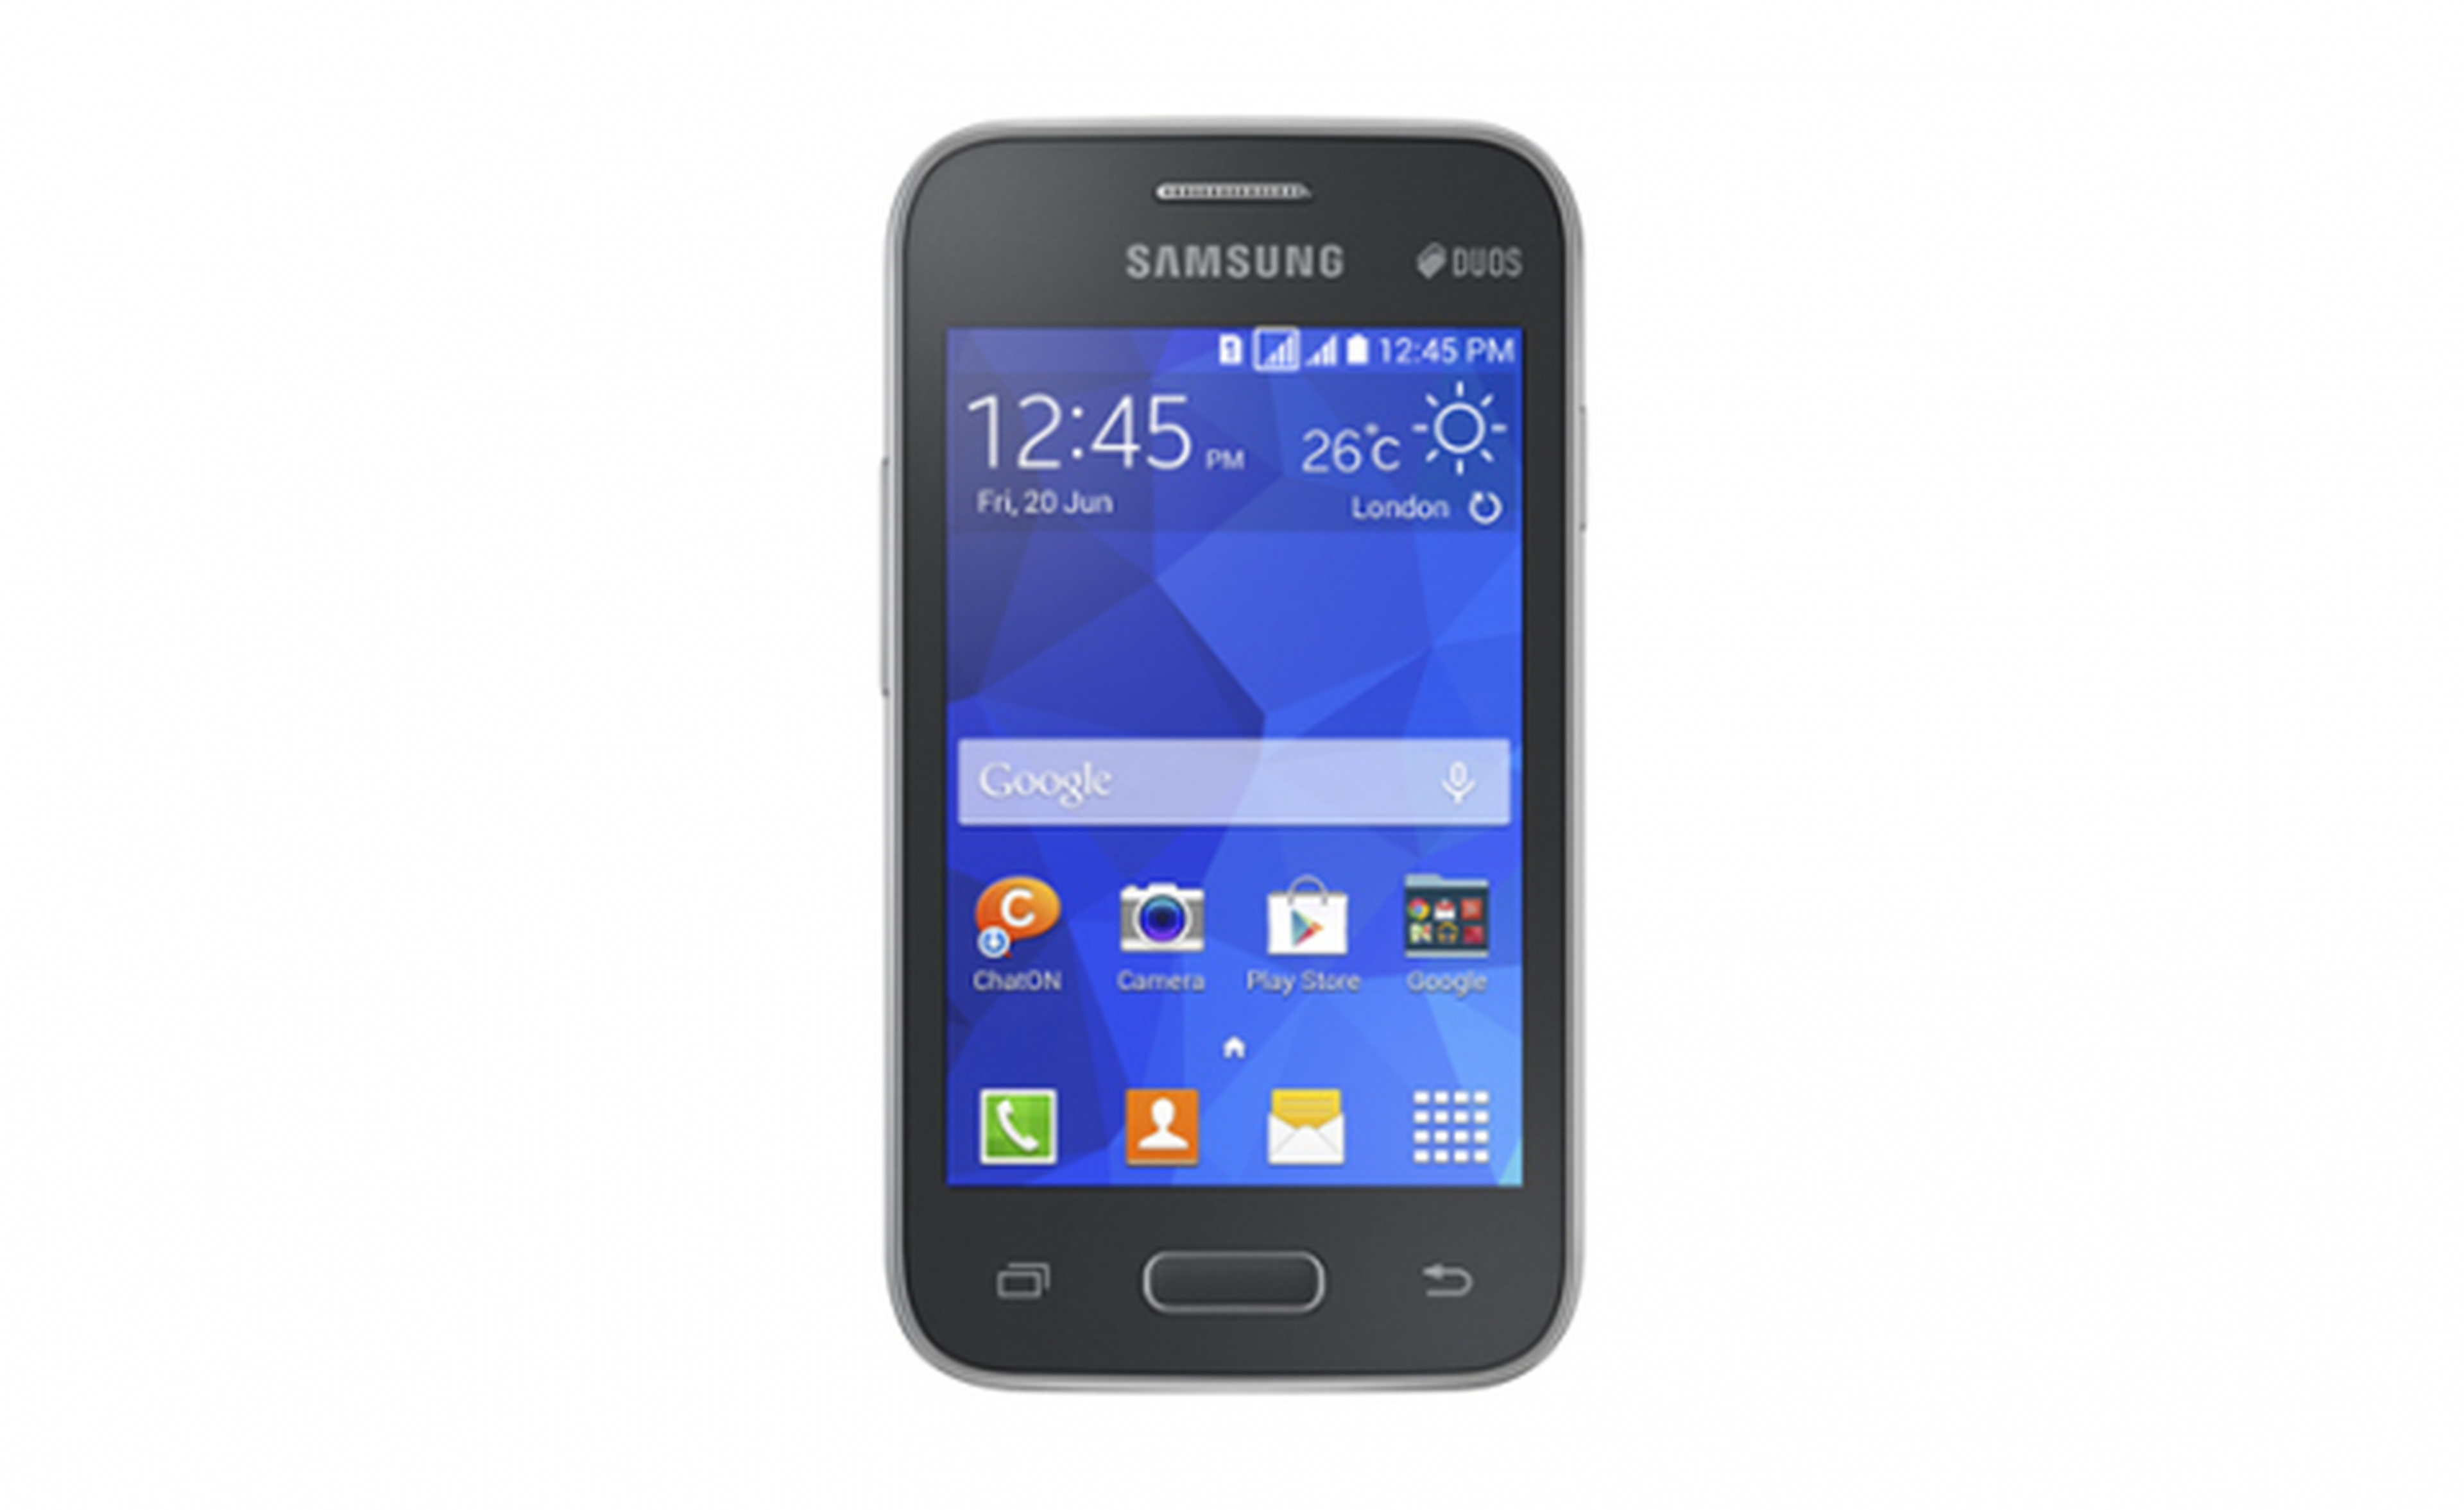 Samsung Galaxy Star 2